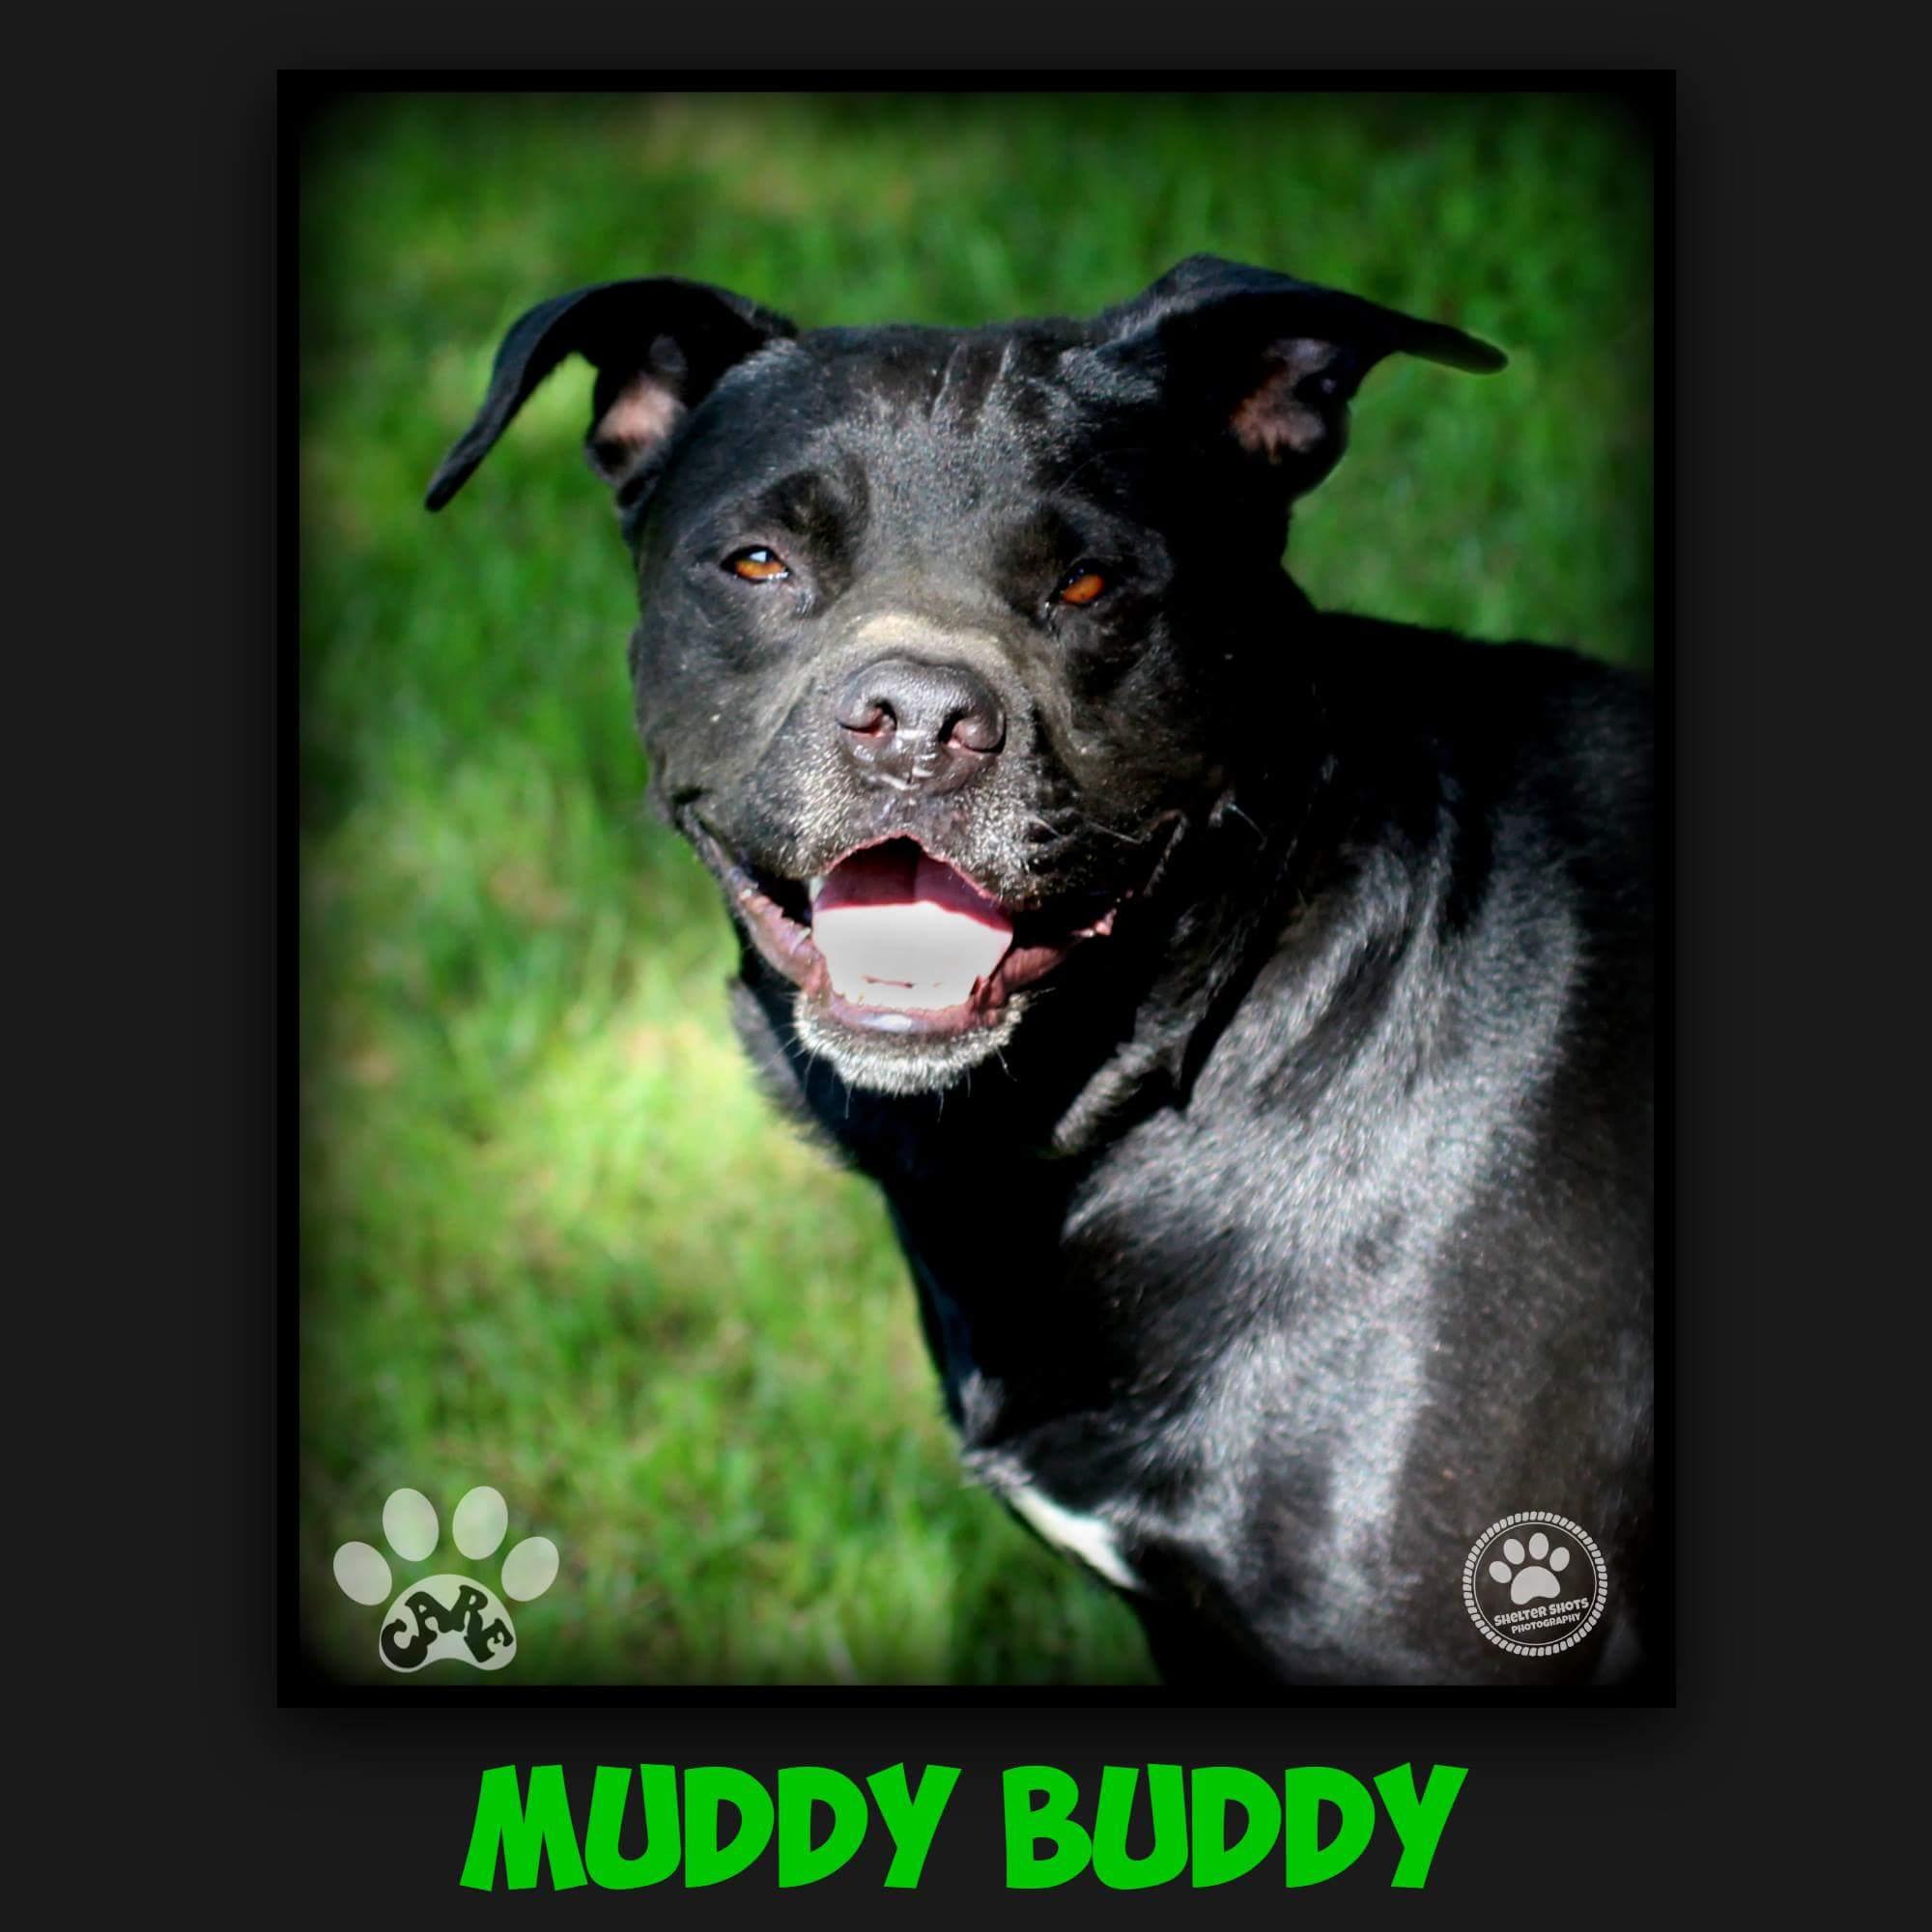 Muddy Buddy detail page